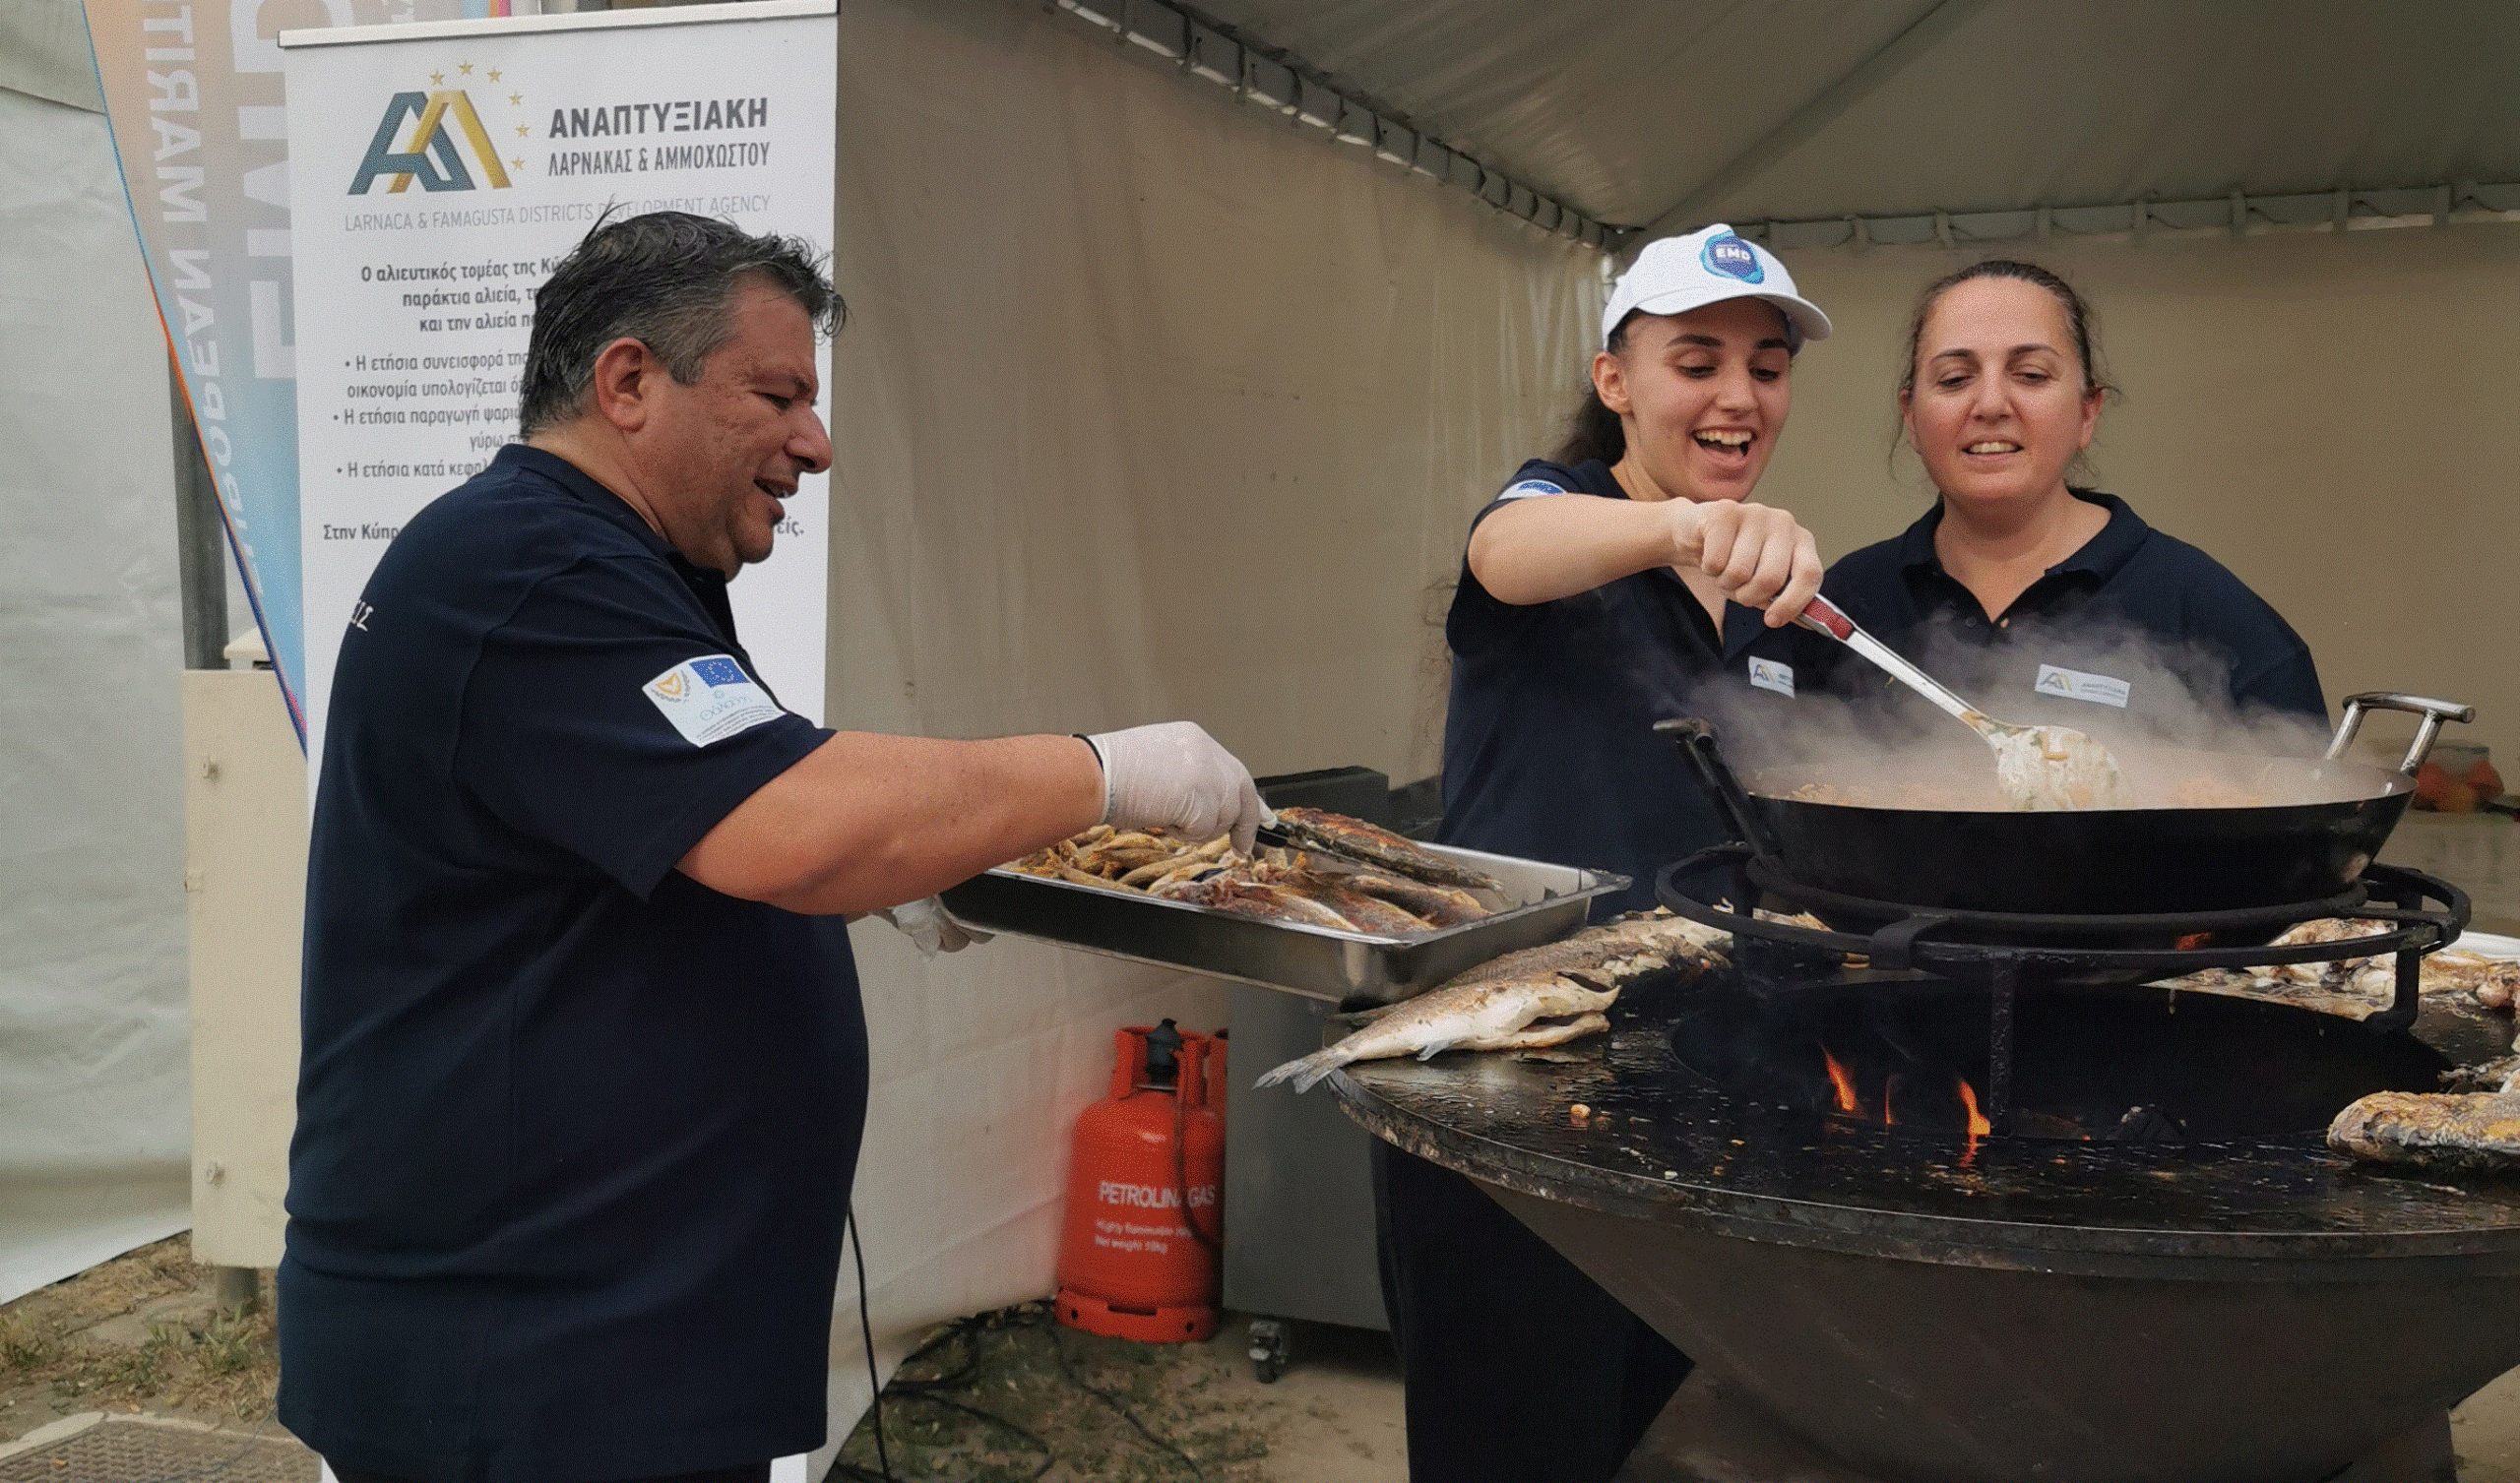 Εκδήλωση «Γεύσεις Βυθού» στο Αλιευτικό καταφύγιο Λάρνακας (Ψαρολίμανο), από την Αναπτυξιακή Εταιρεία Επαρχιών Λάρνακας Αμμοχώστου